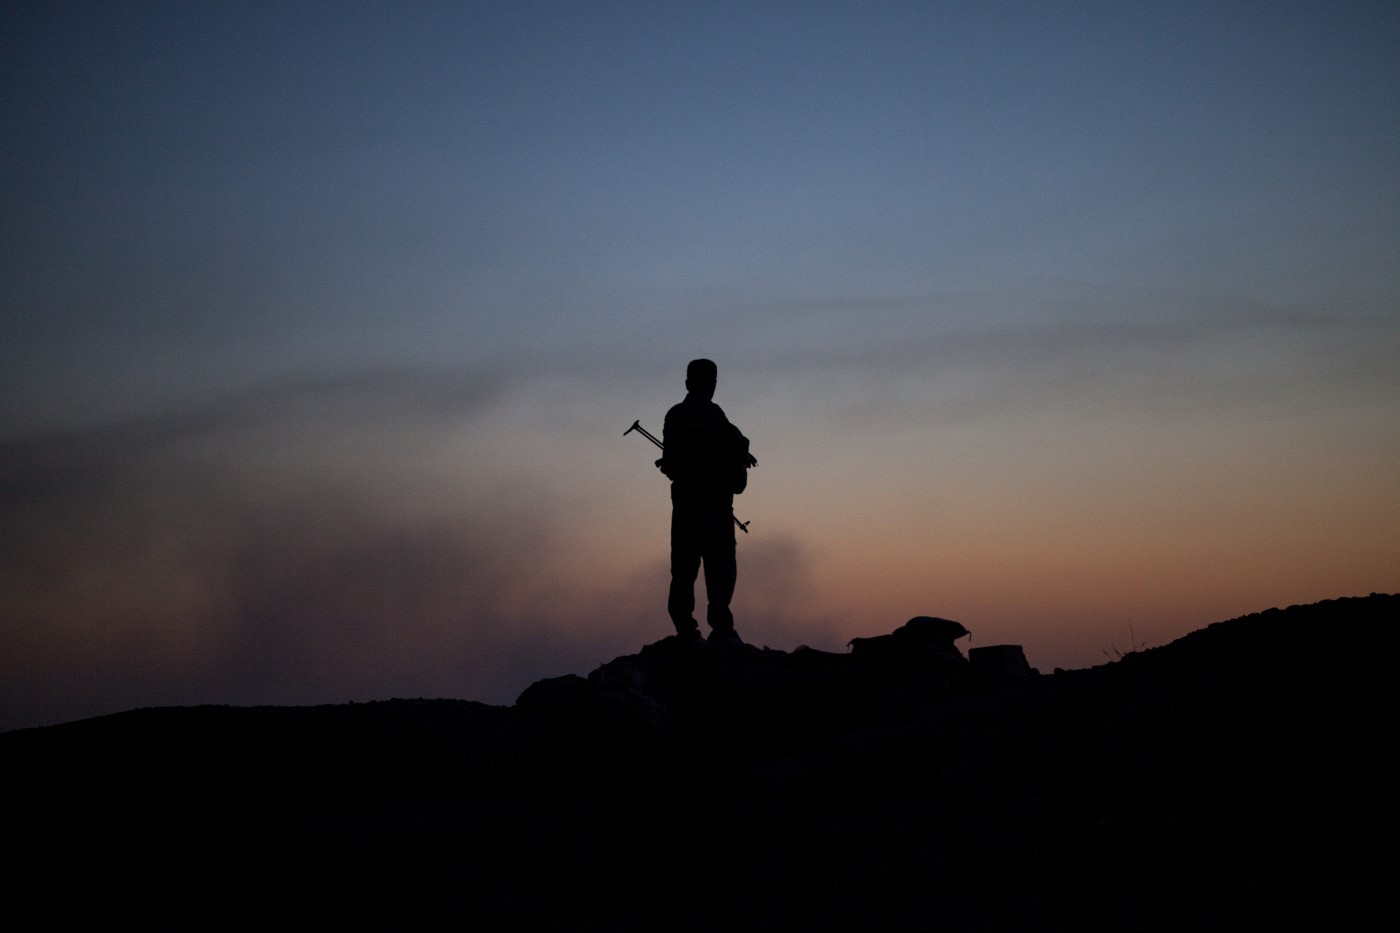 Un Peshmerga controla un possible atac de l'Estat Islàmic a un dels punts estratègics de la línia del front Tuz Khurmatu. Al fons, a la llum del crepuscle, el fum reflecteix l'activitat dels membres de l'Estat Islàmic. Tuz Khurmatu; Kurdistan, Iraq. 19 de juny de 2017